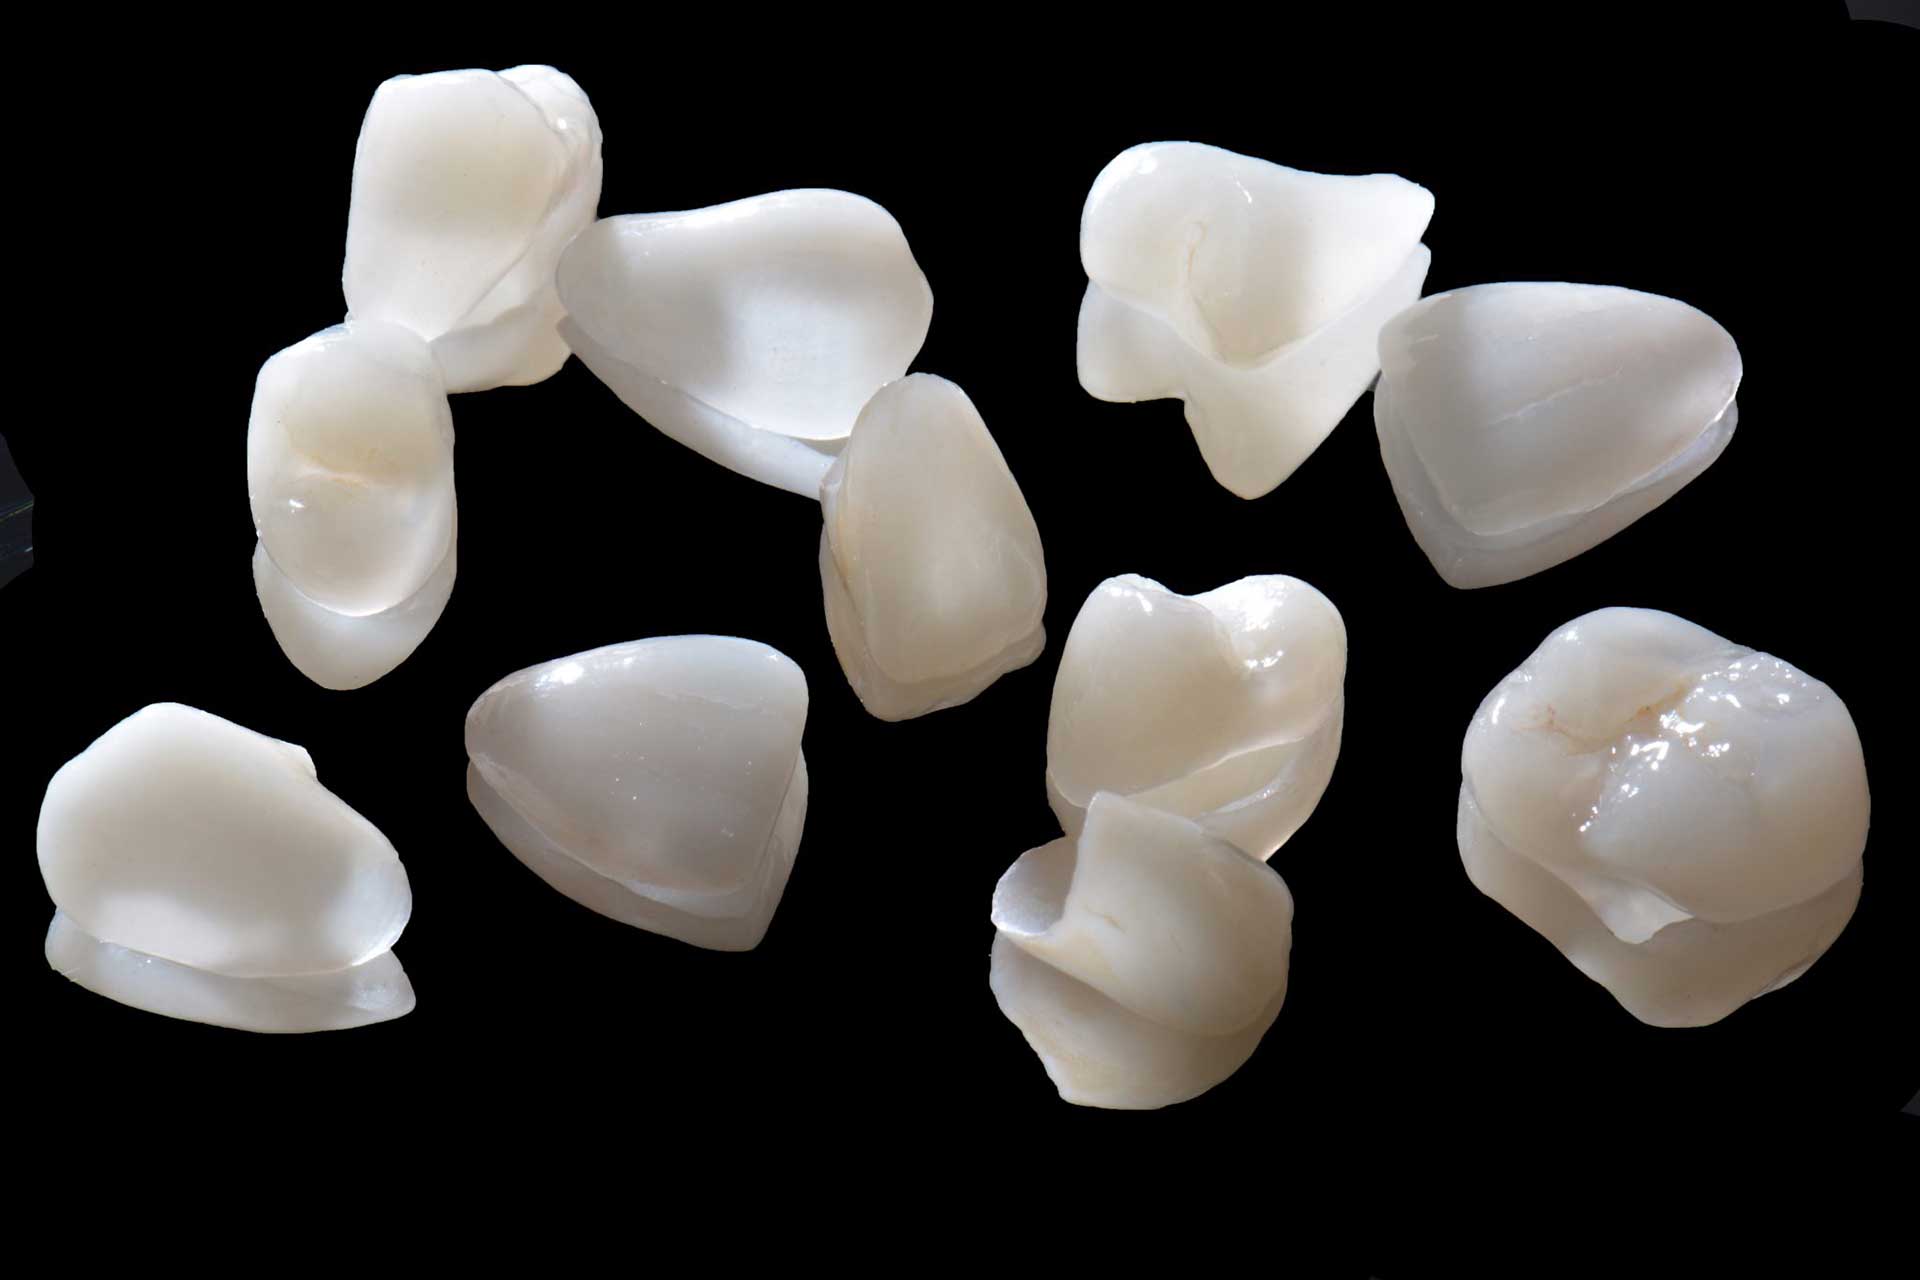 Ricostruzione dei denti: meglio in composito o ceramica? Ecco cosa c'è da  sapere